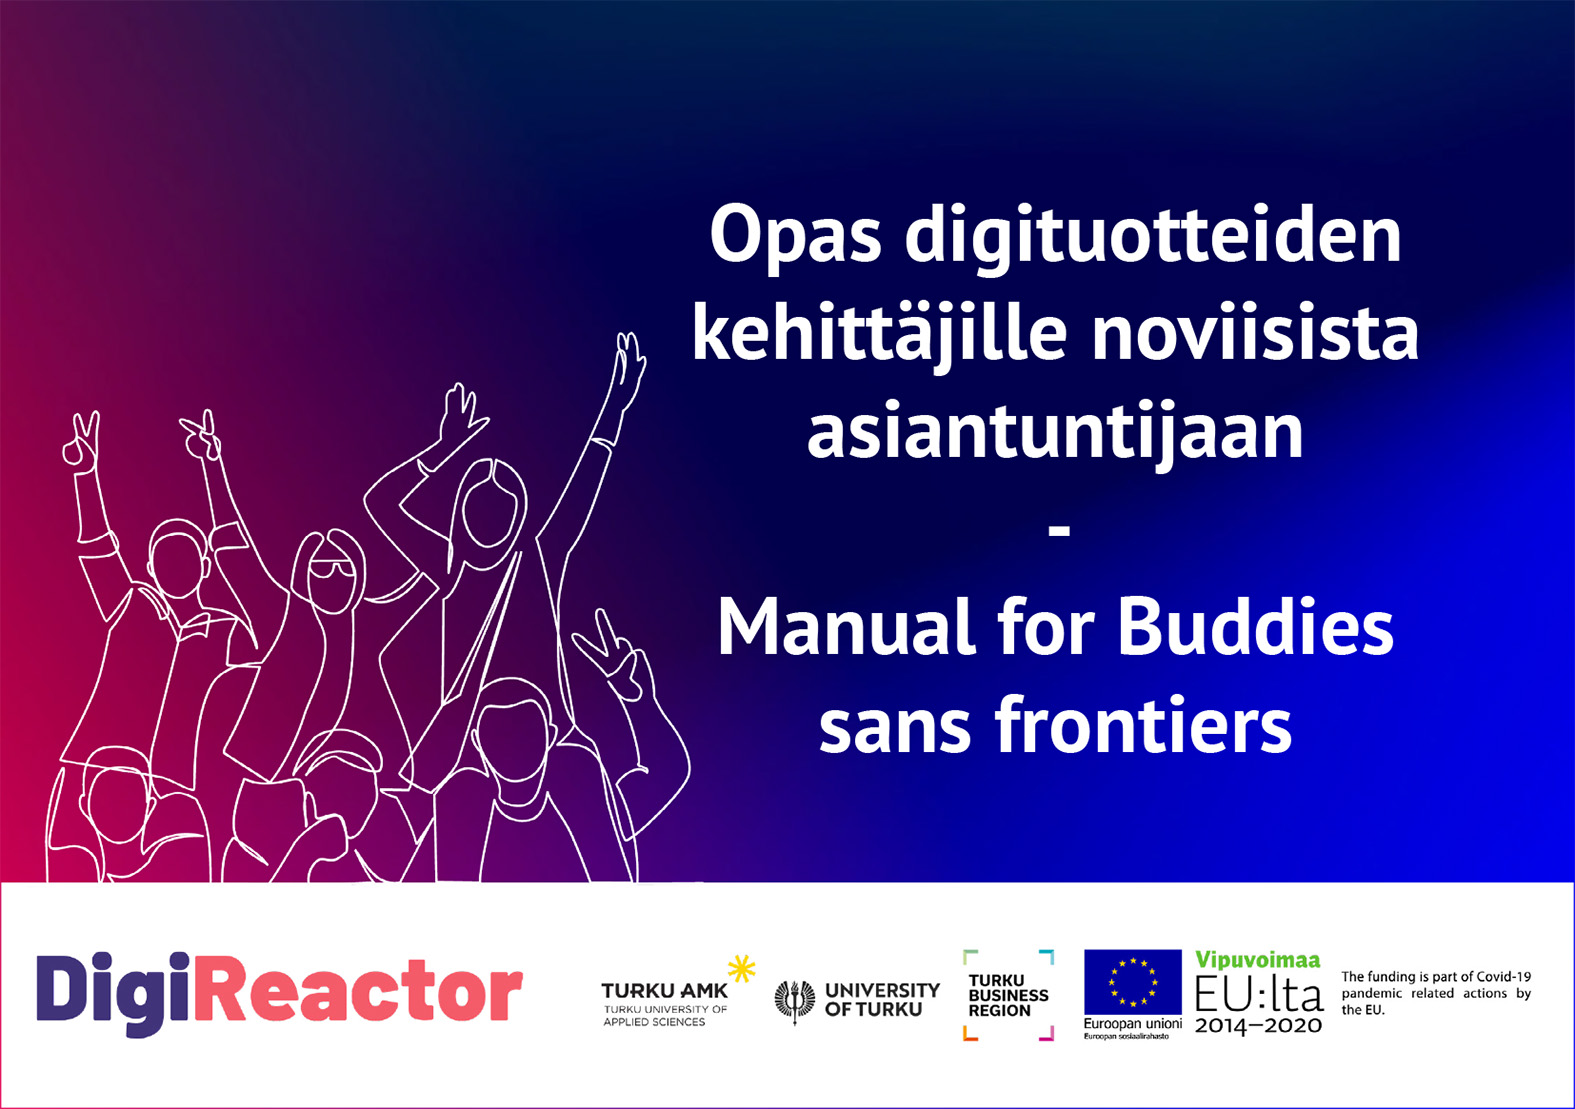 Opas digituotteiden kehittäjille noviisista asiantuntijaan - Manual for Buddies sans frontiers